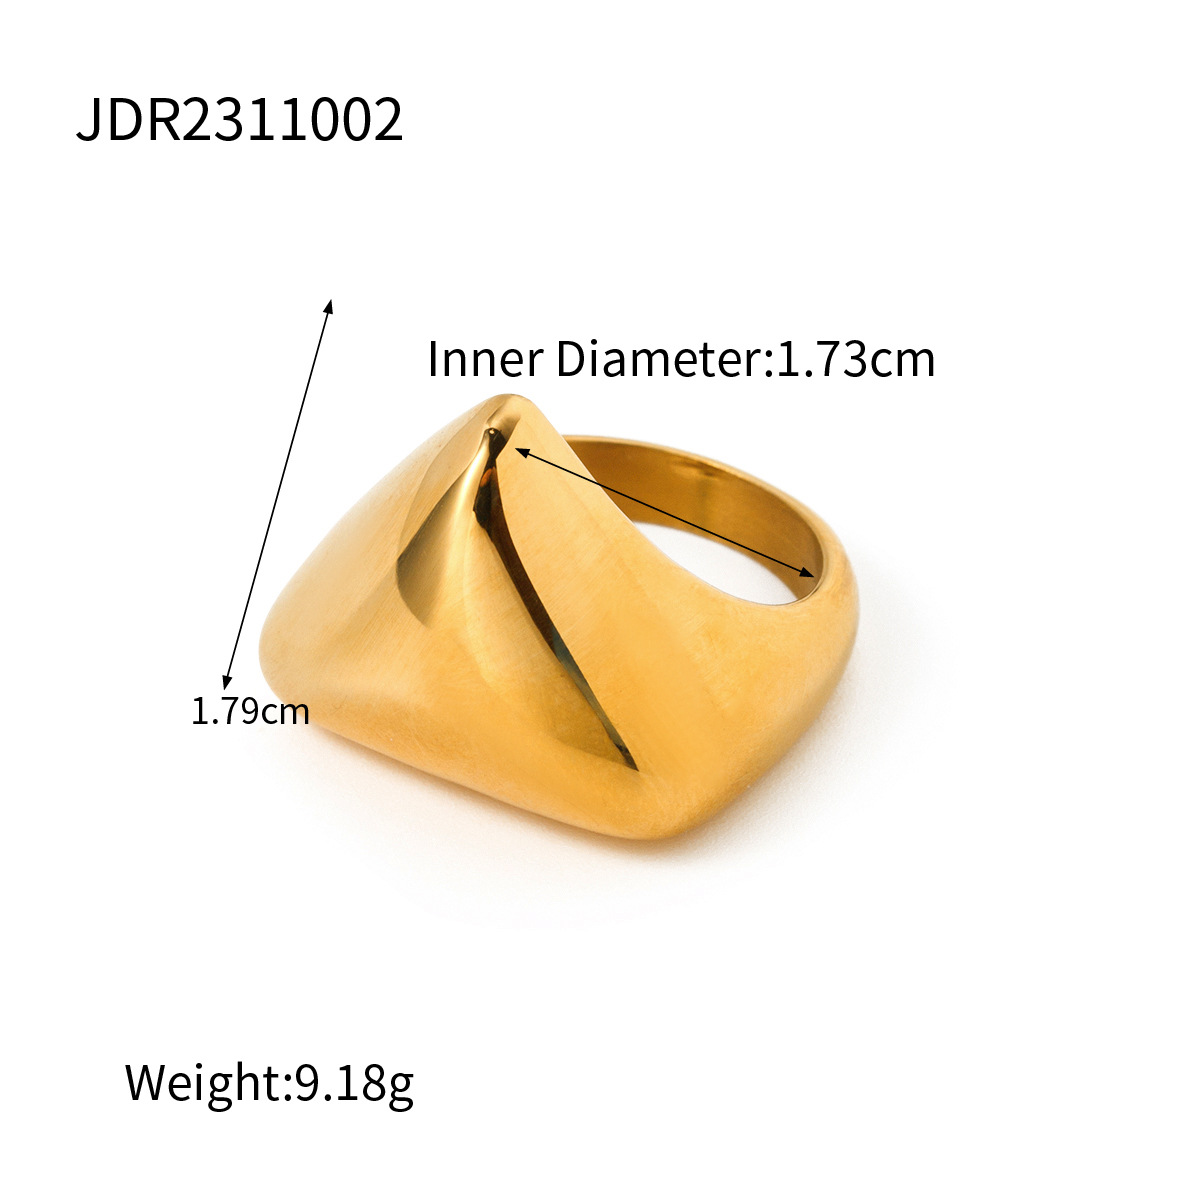 JDR2311002 US Size #6